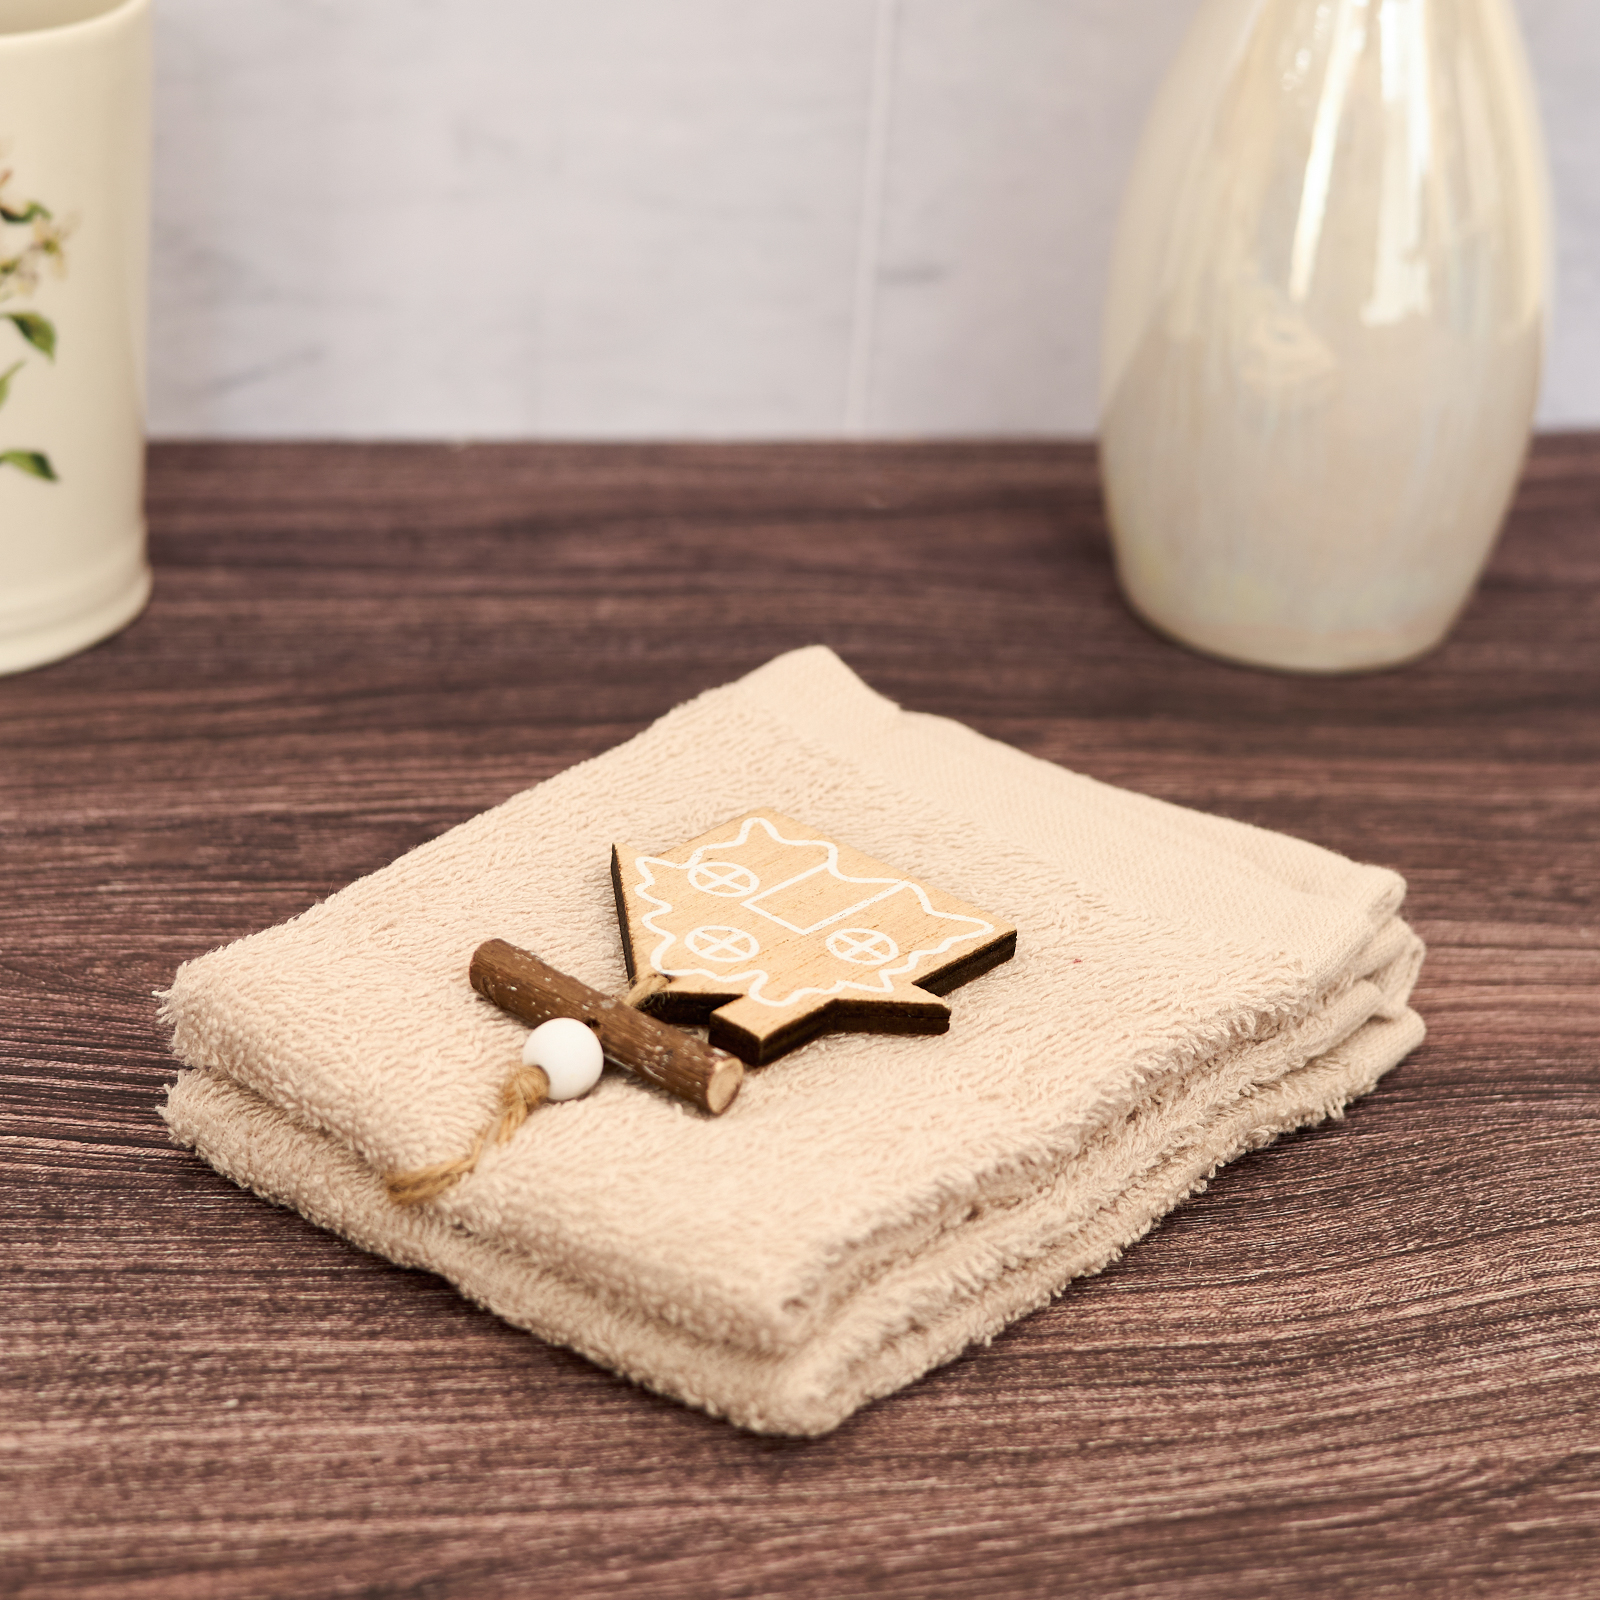 Комплект махровых полотенец Donara, бежевый диван кровать тахта рио микровельвет бежевый экокожа коричневый